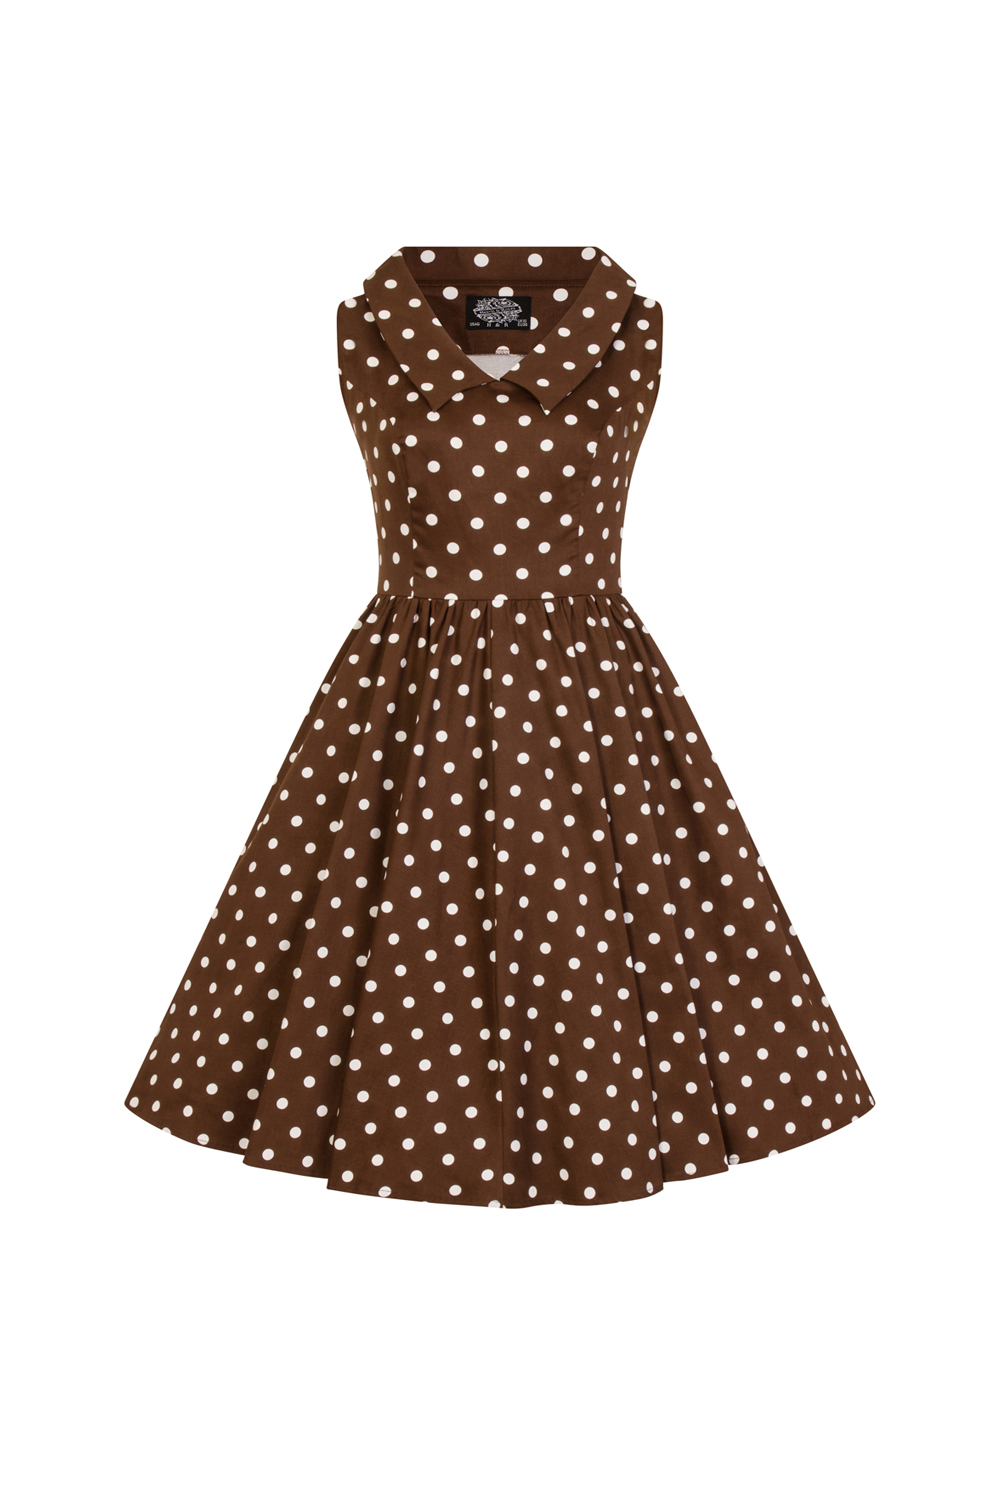 Girls Ravishing Chocolate Polka Dot Swing Dress